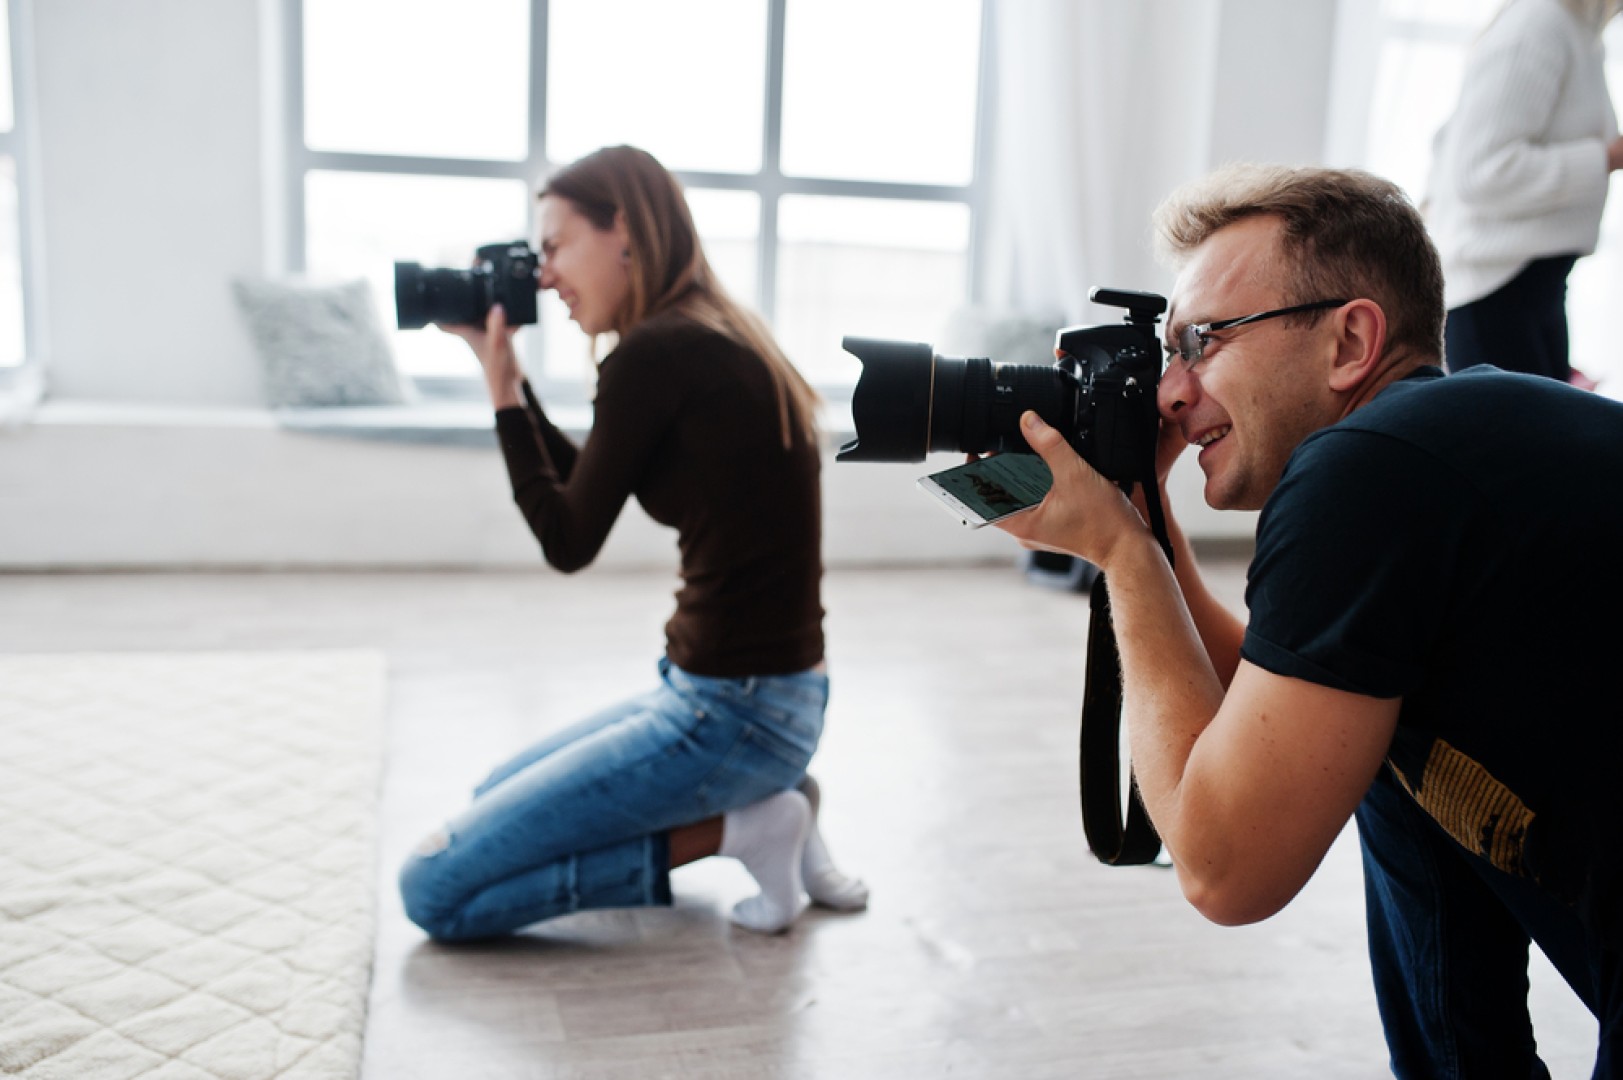 Svatební kameraman dohromady s fotografem je řešením, jak dostat maximální hodnotu za vaše peníze. Zvěčněte svůj svatební den s dodavatelem z bridee.cz